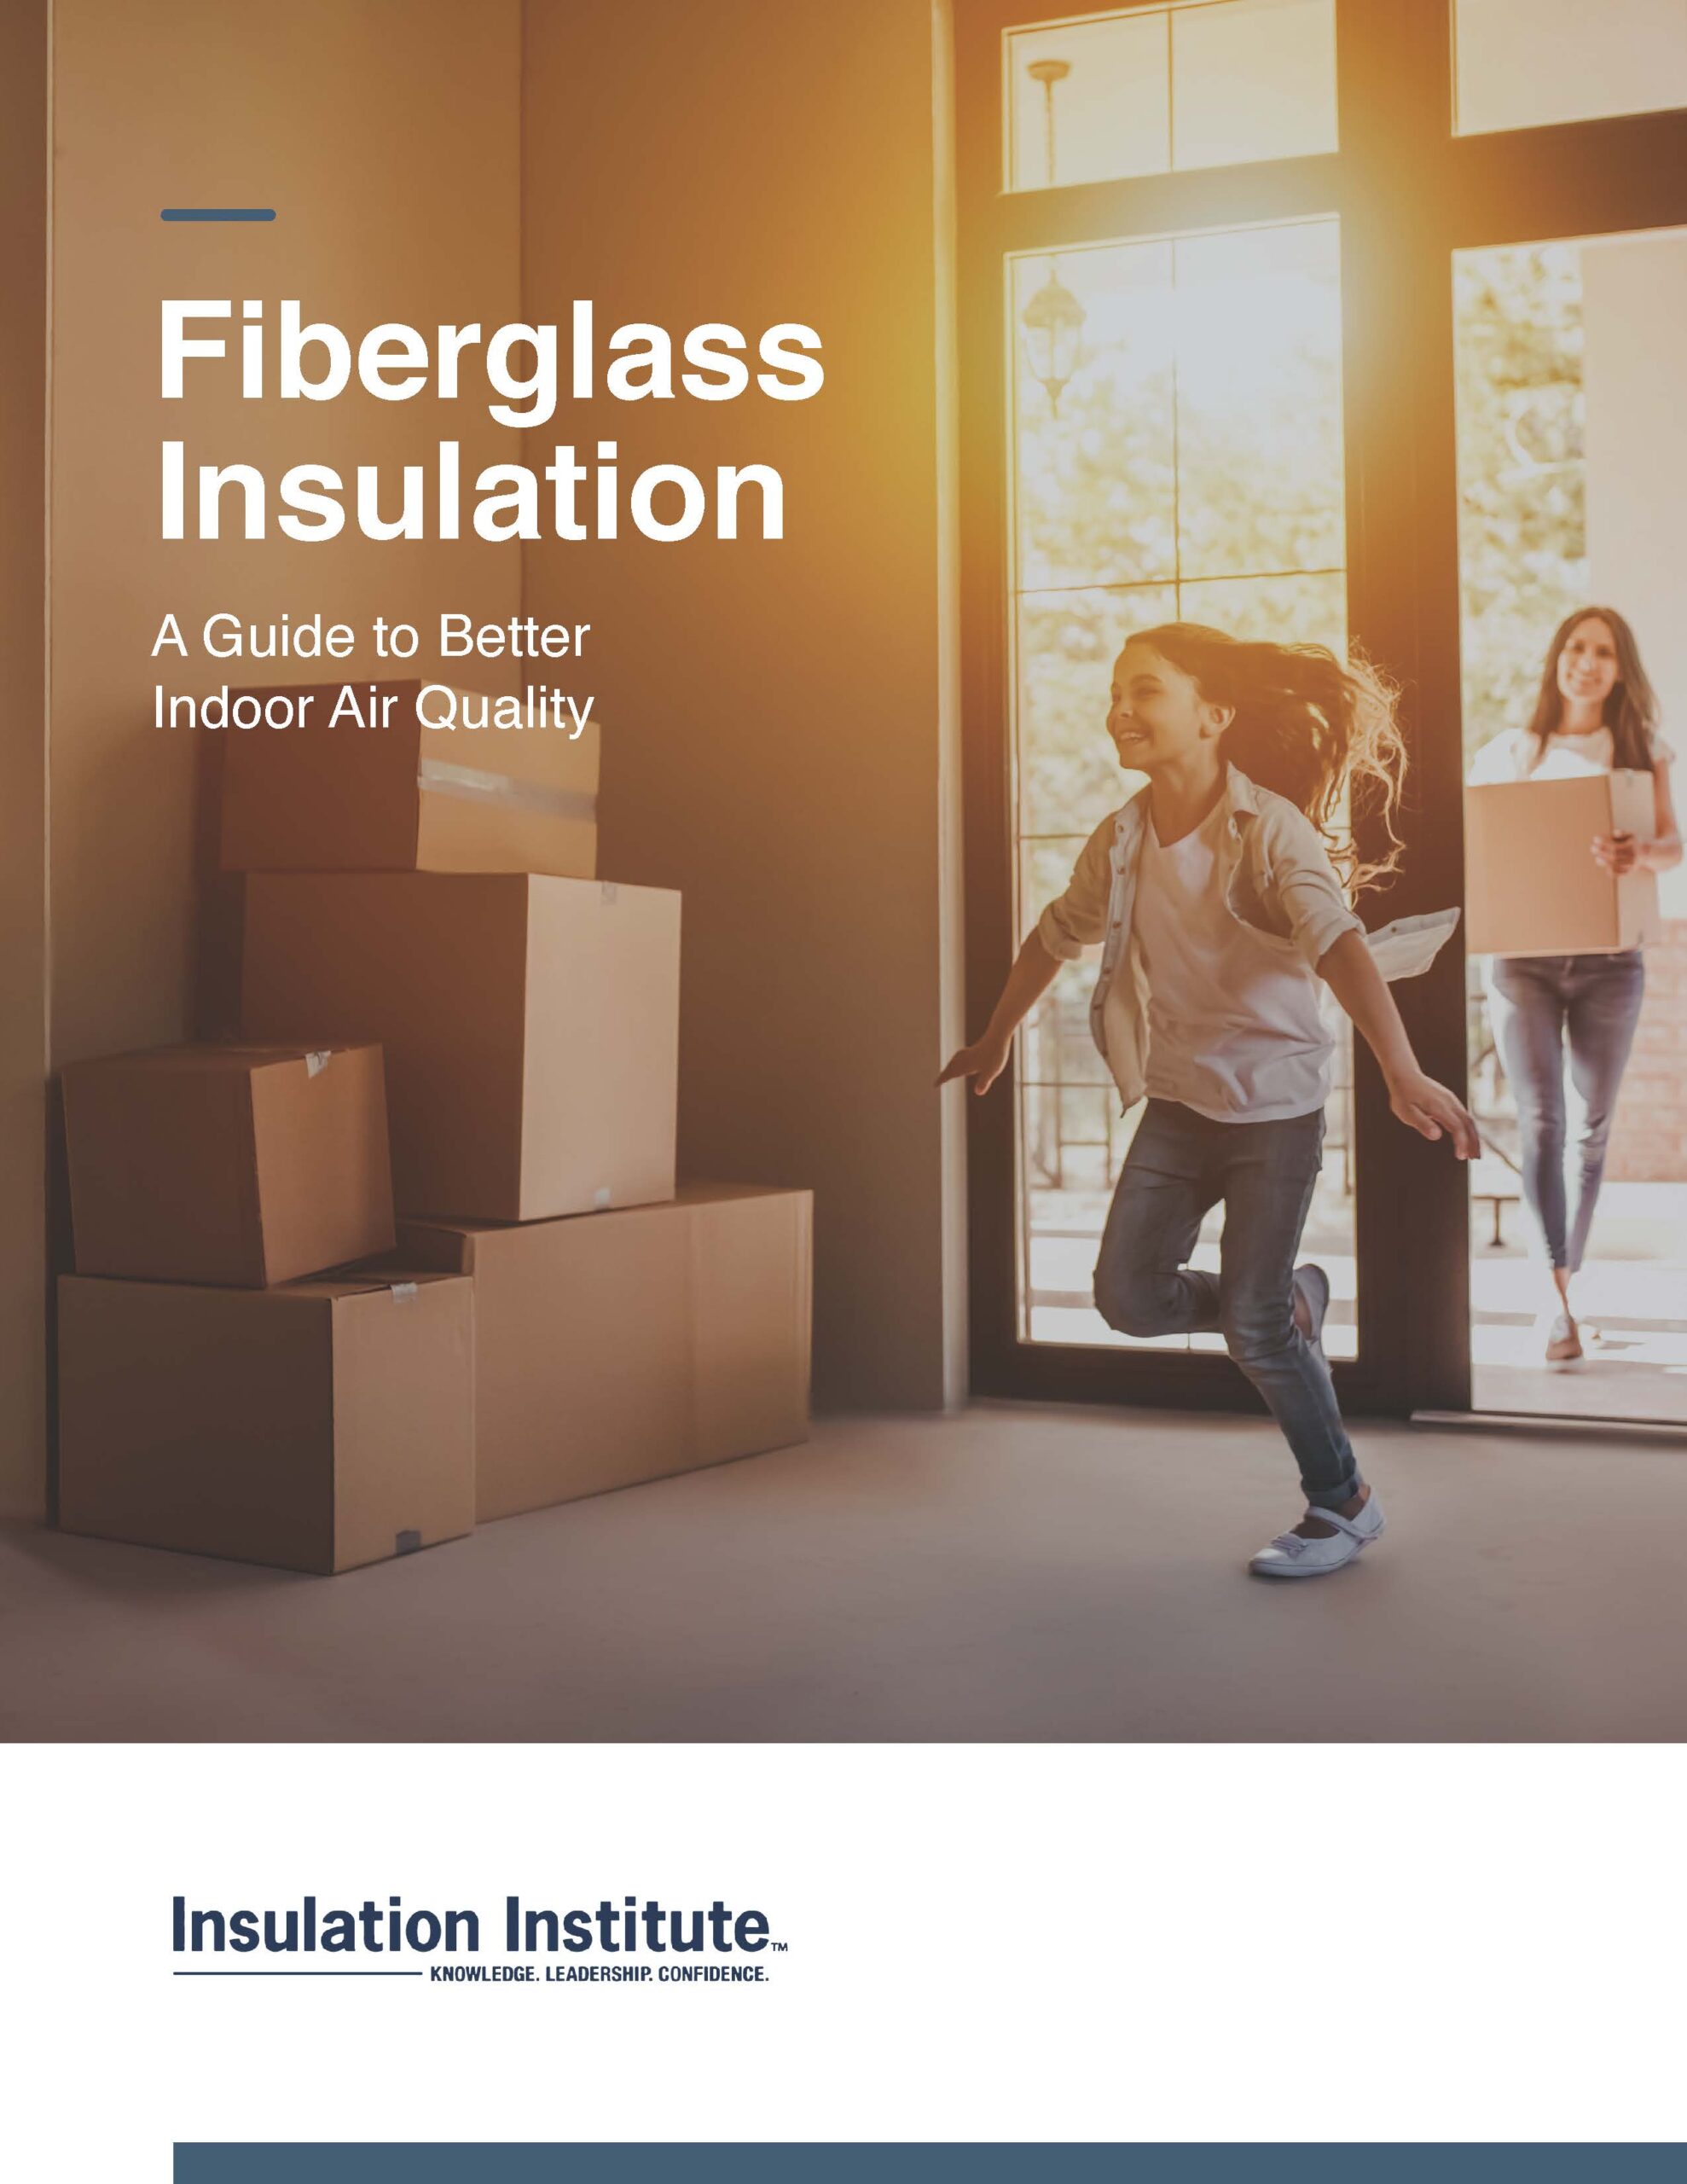 New Guide: Fiberglass and IAQ